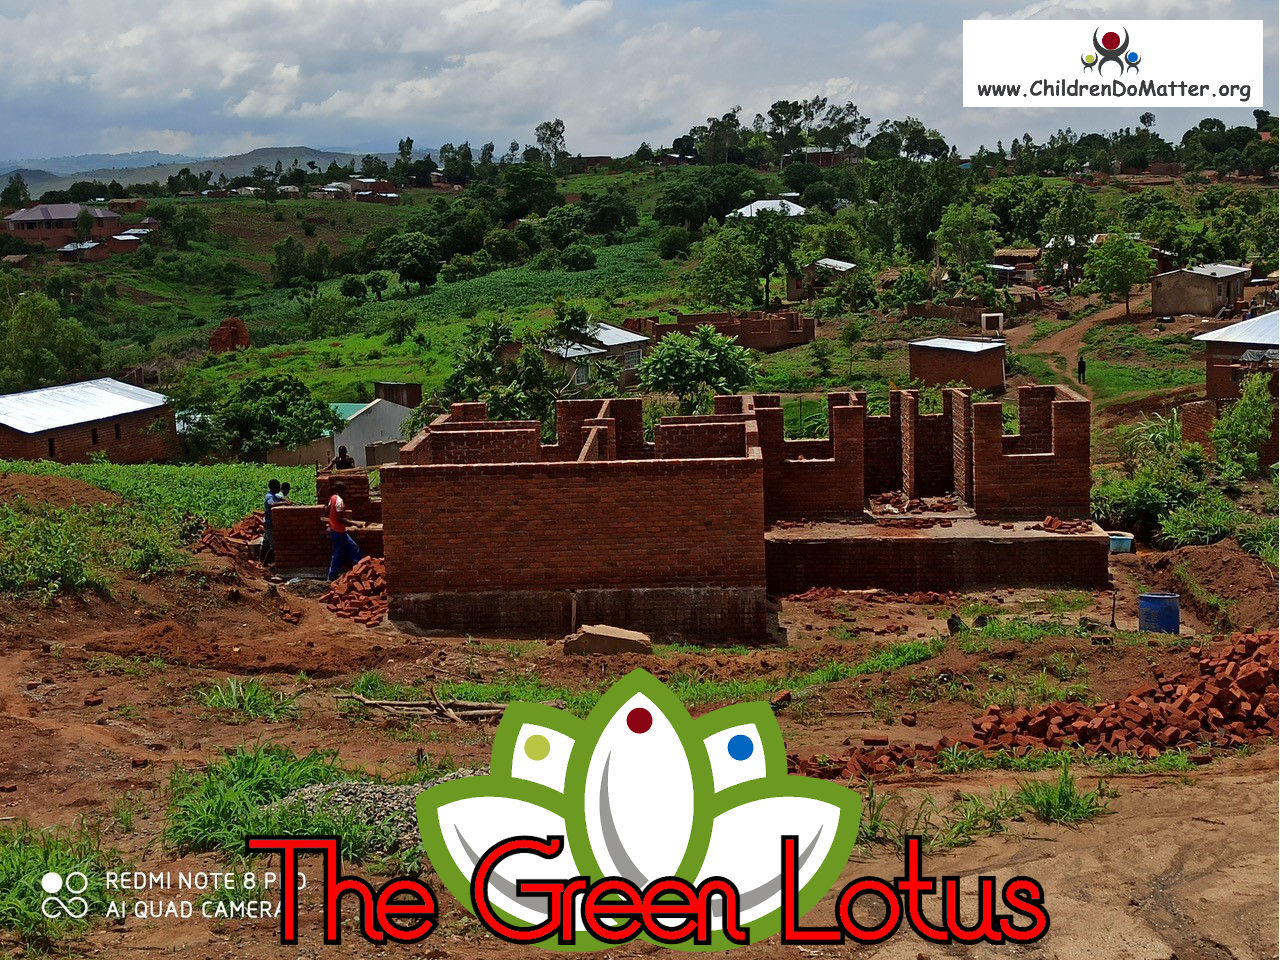 costruzione dell'orfanotrofio casa di accoglienza the green lotus a blantyre malawi - children do matter - 15